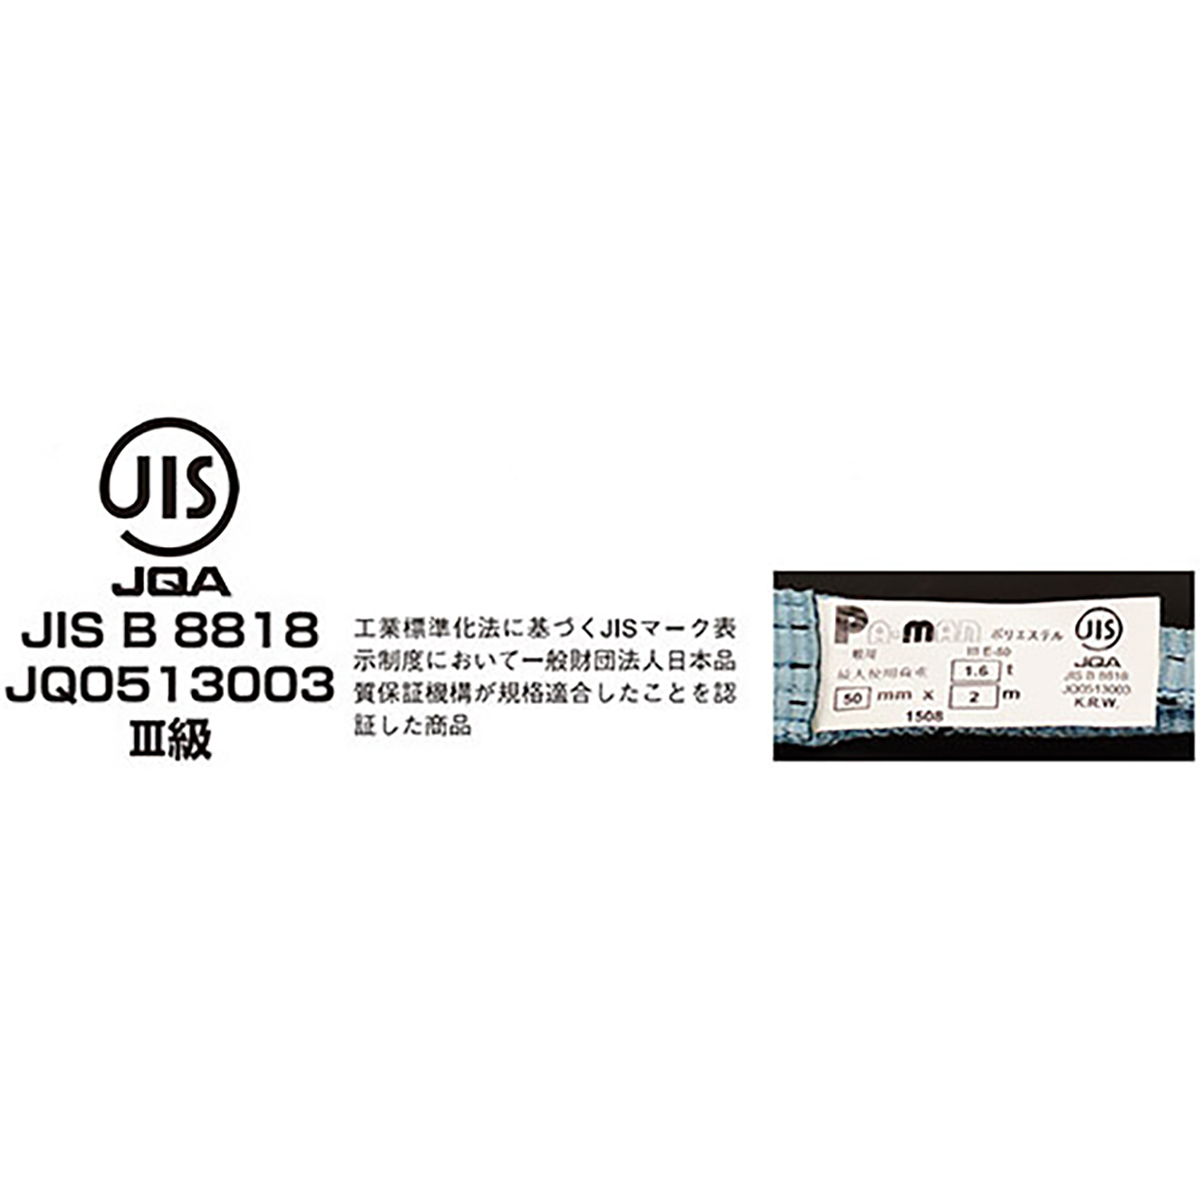 ポリベルトスリング JIS III級 ソフト面付 巾150mm 10m 1本